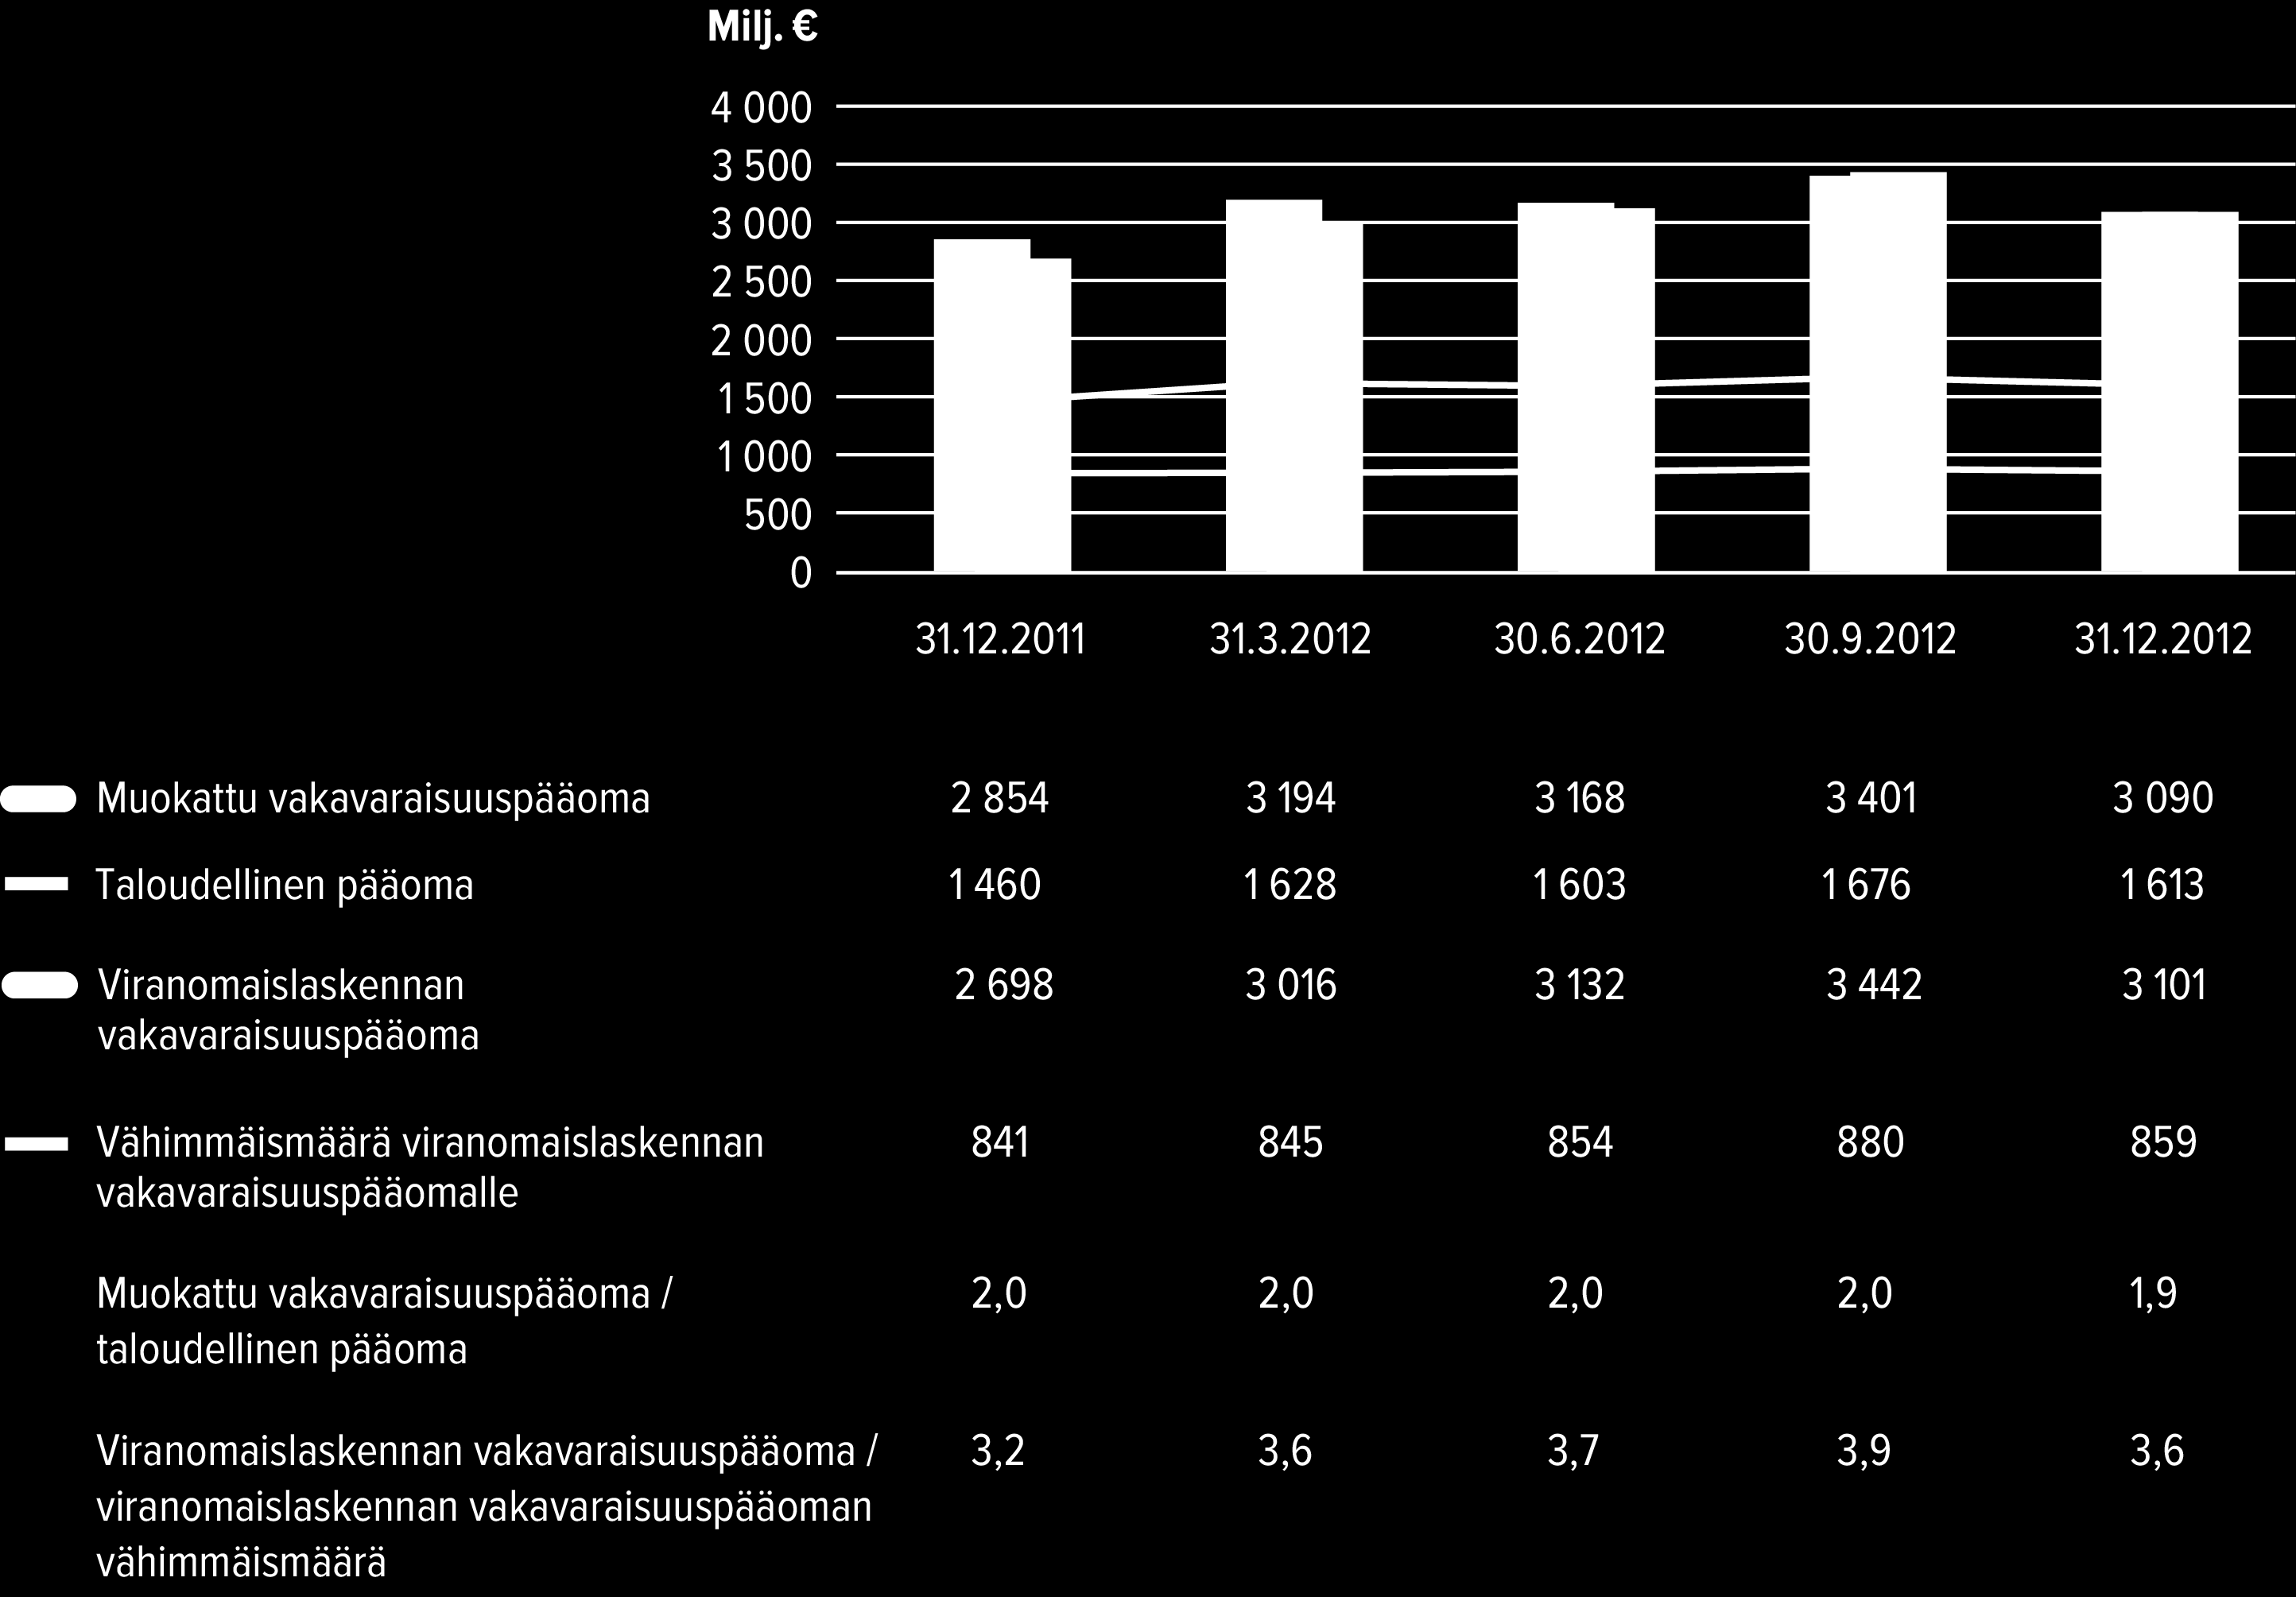 Sampo-konsernin vuosikertomus 2012 Viranomaisvaatimusten mukaisessa tarkastelussa viranomaislaskennan mukaista vakavaraisuuspääoman määrää verrataan viranomaisten pääomavaatimukseen.